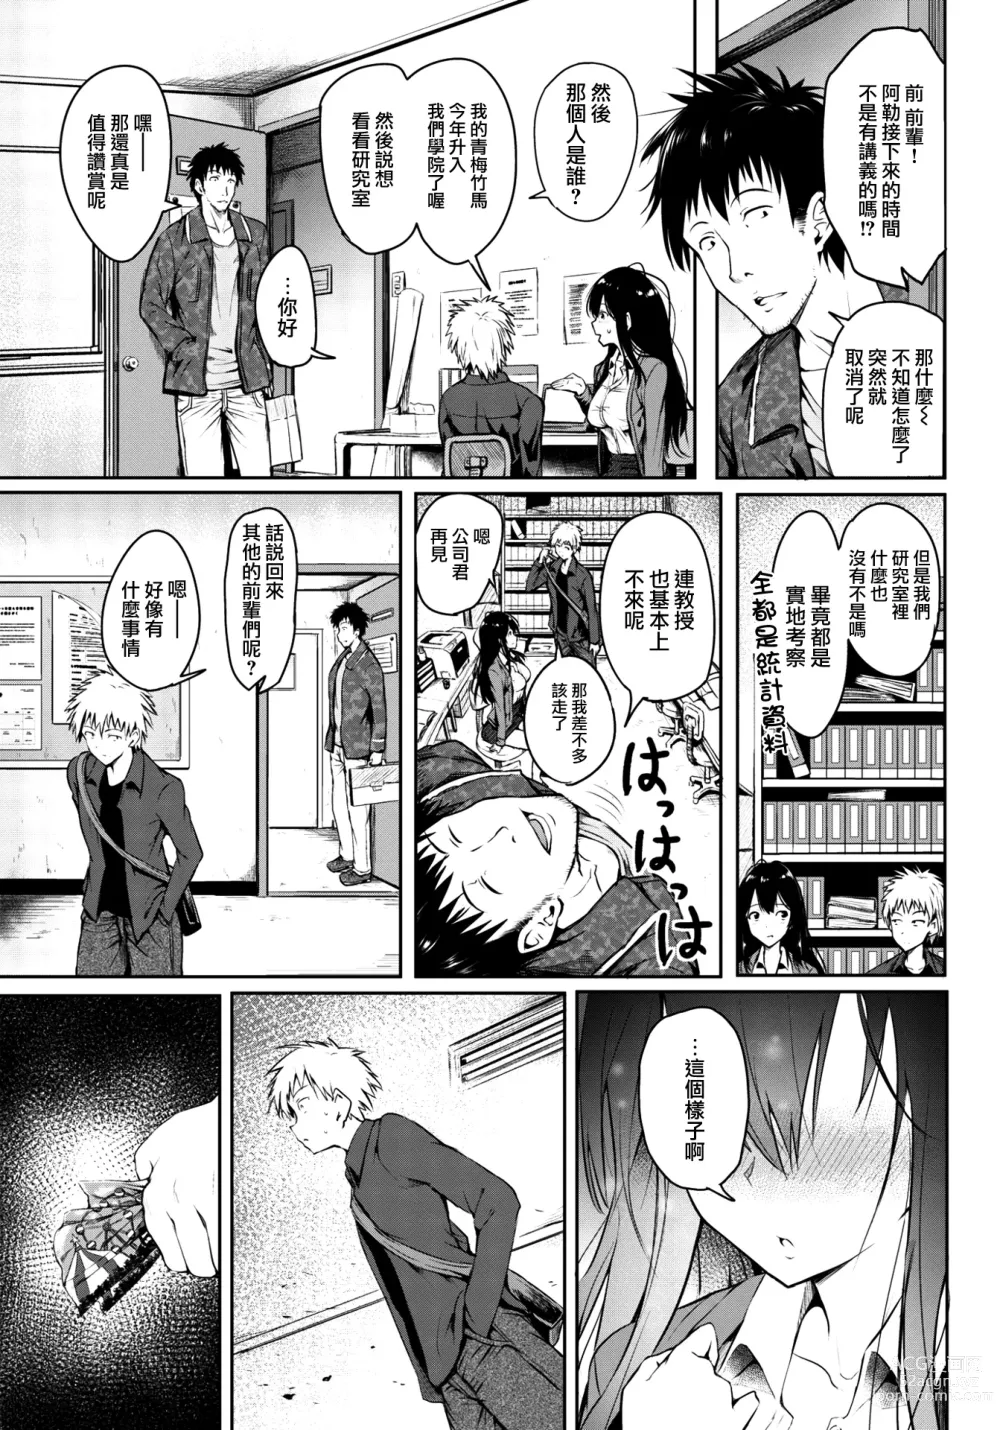 Page 3 of manga 劣情モノポリー